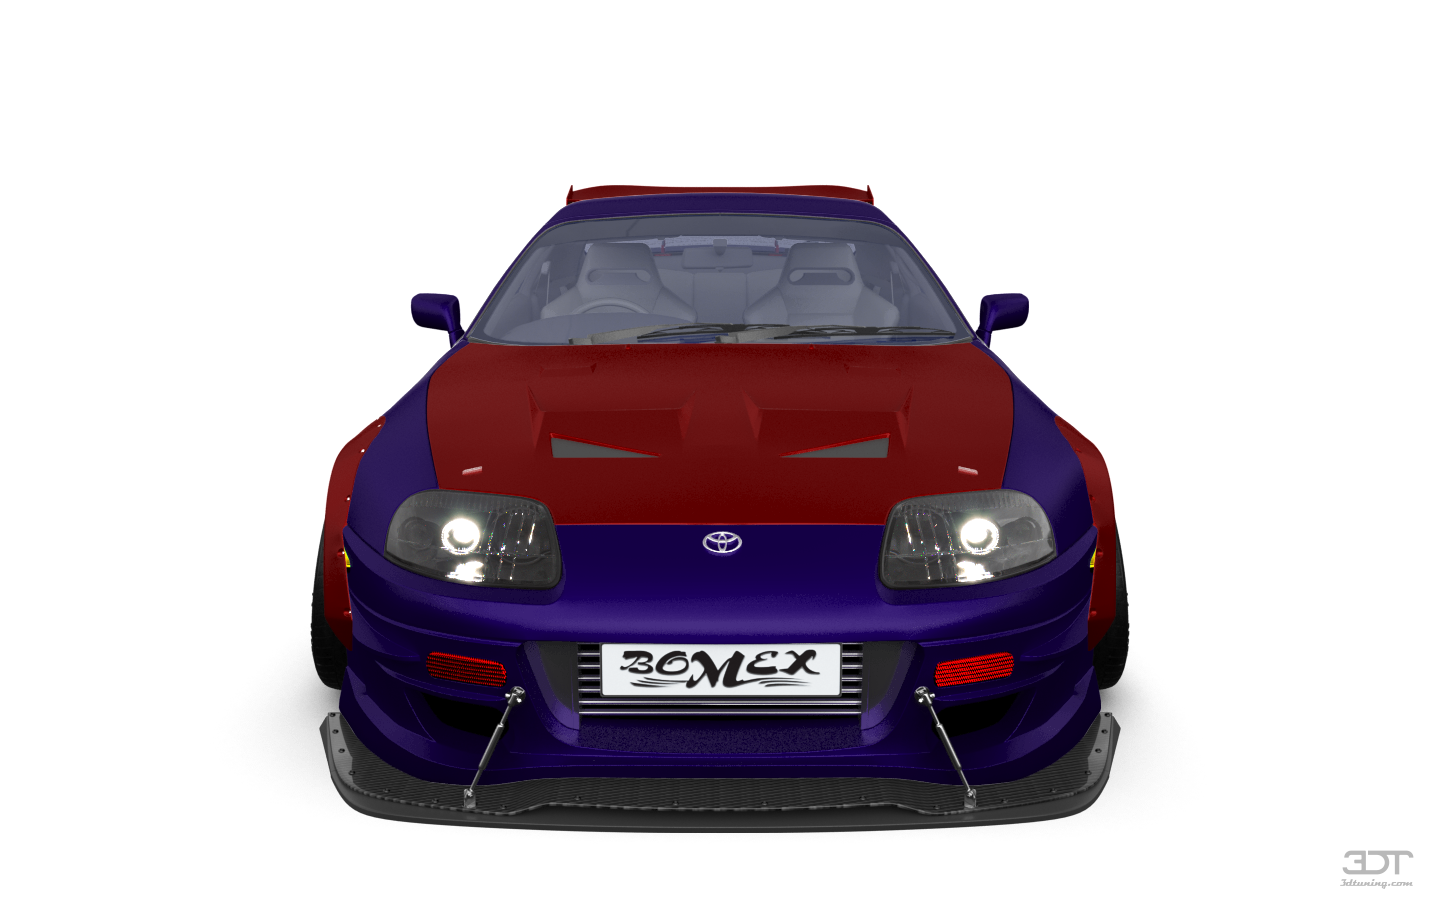 Toyota Supra 2 Door Coupe 2000